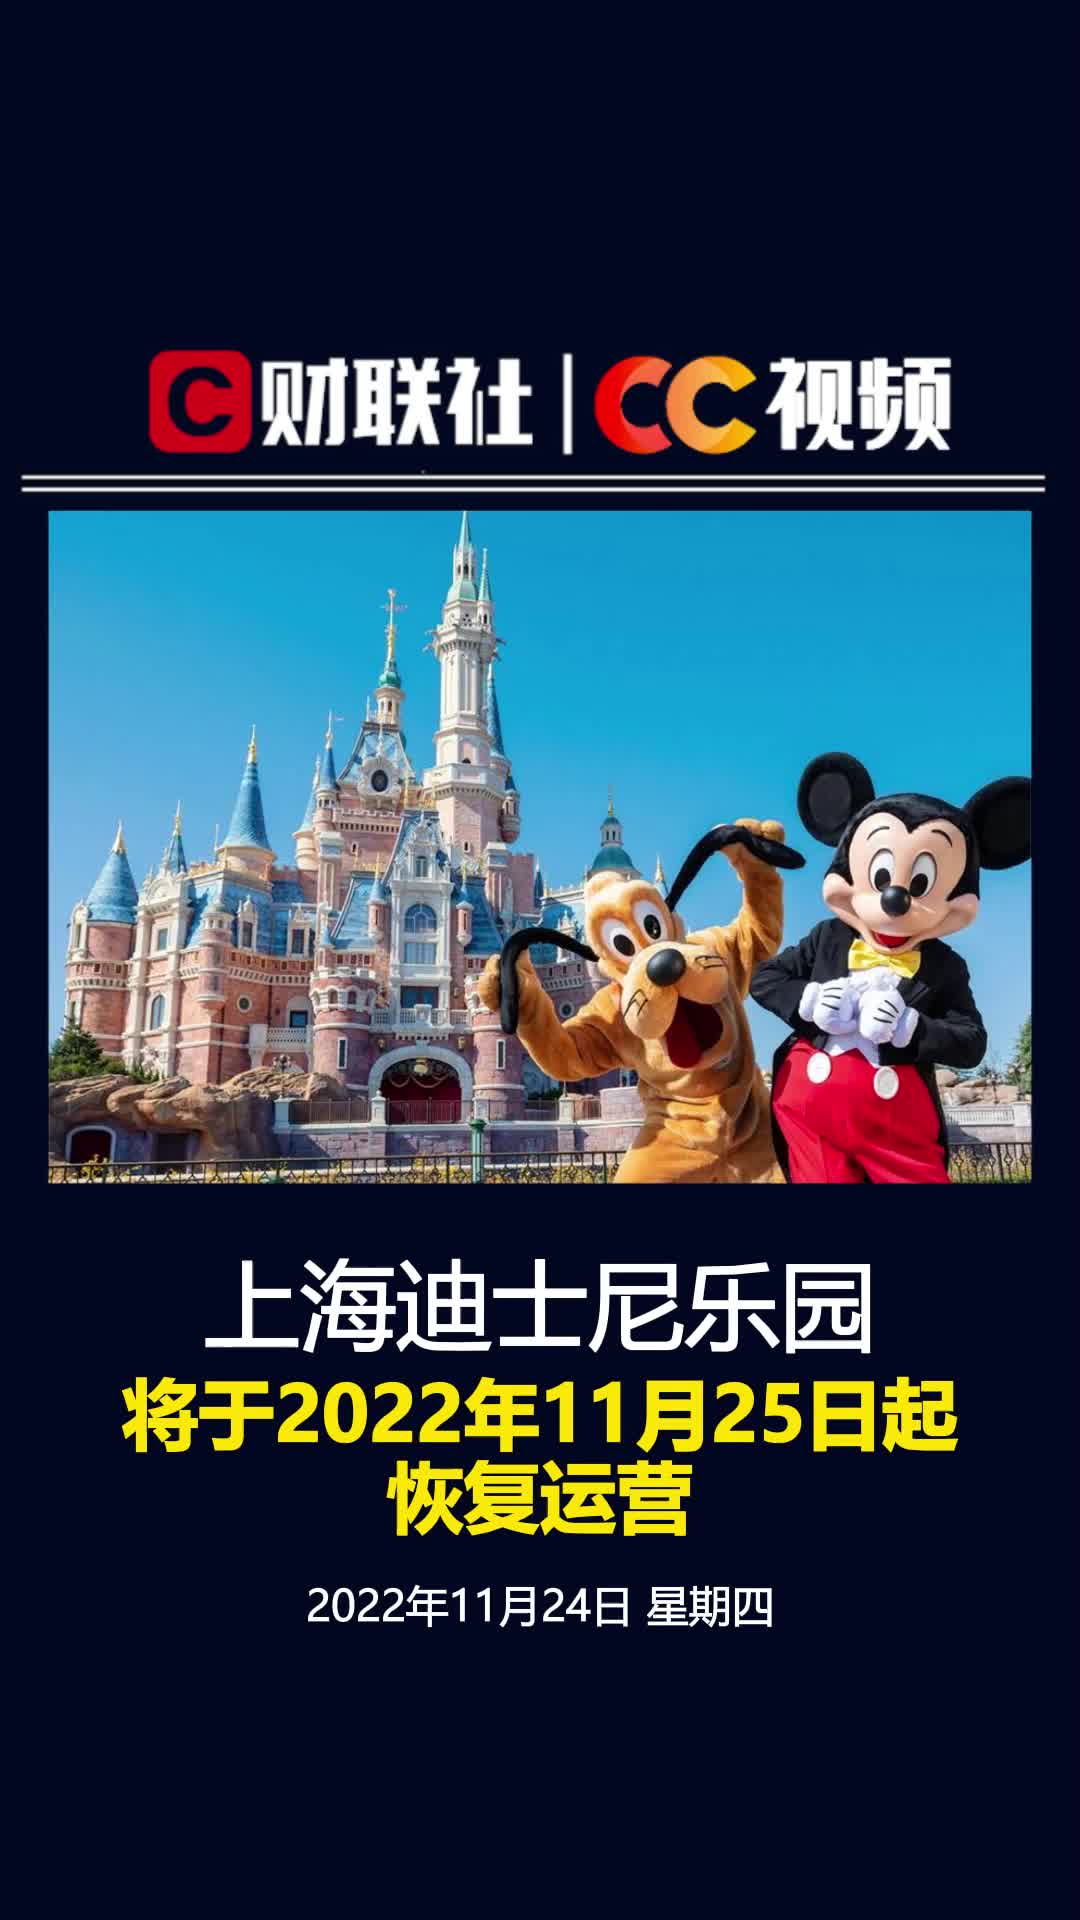 上海迪士尼乐园将于2022年11月25日起恢复运营